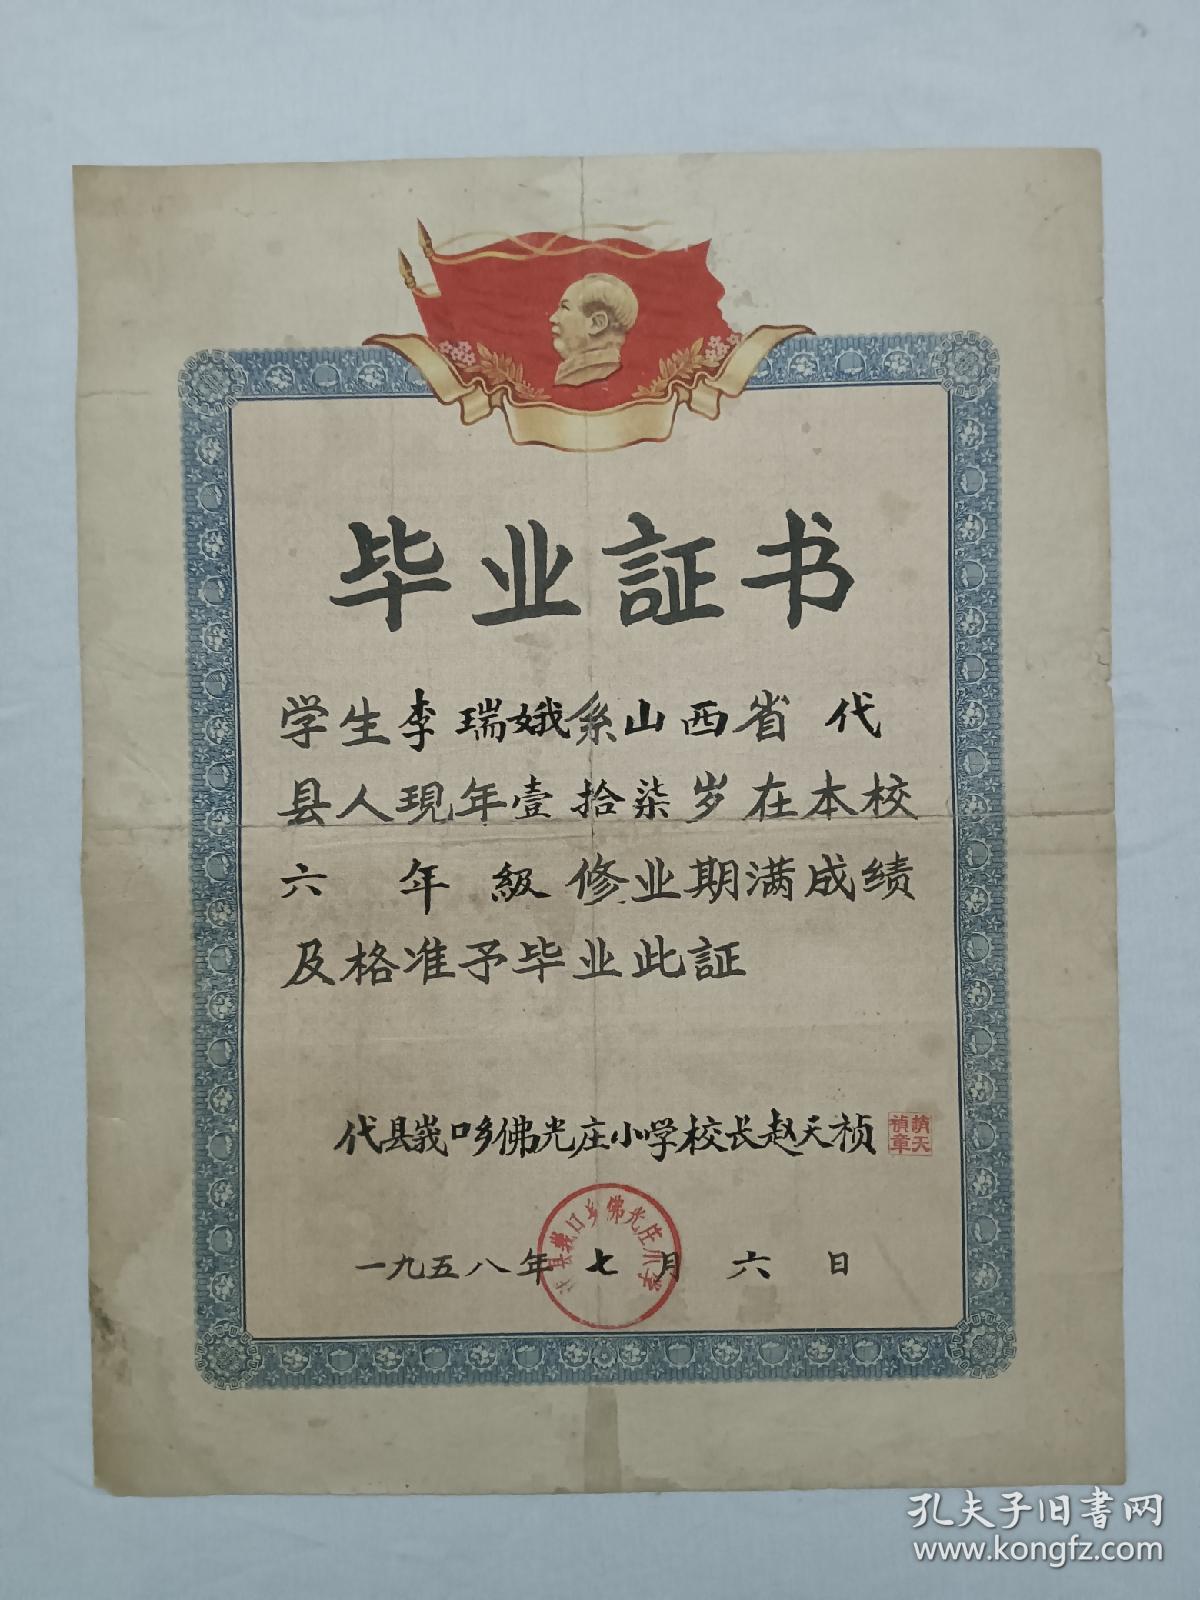 票证单据证书契约：毕业证书、 山西省代县 、小学 、和中学 、带毛泽东头像 、(同一人) 两张含售。1958年。1961年。